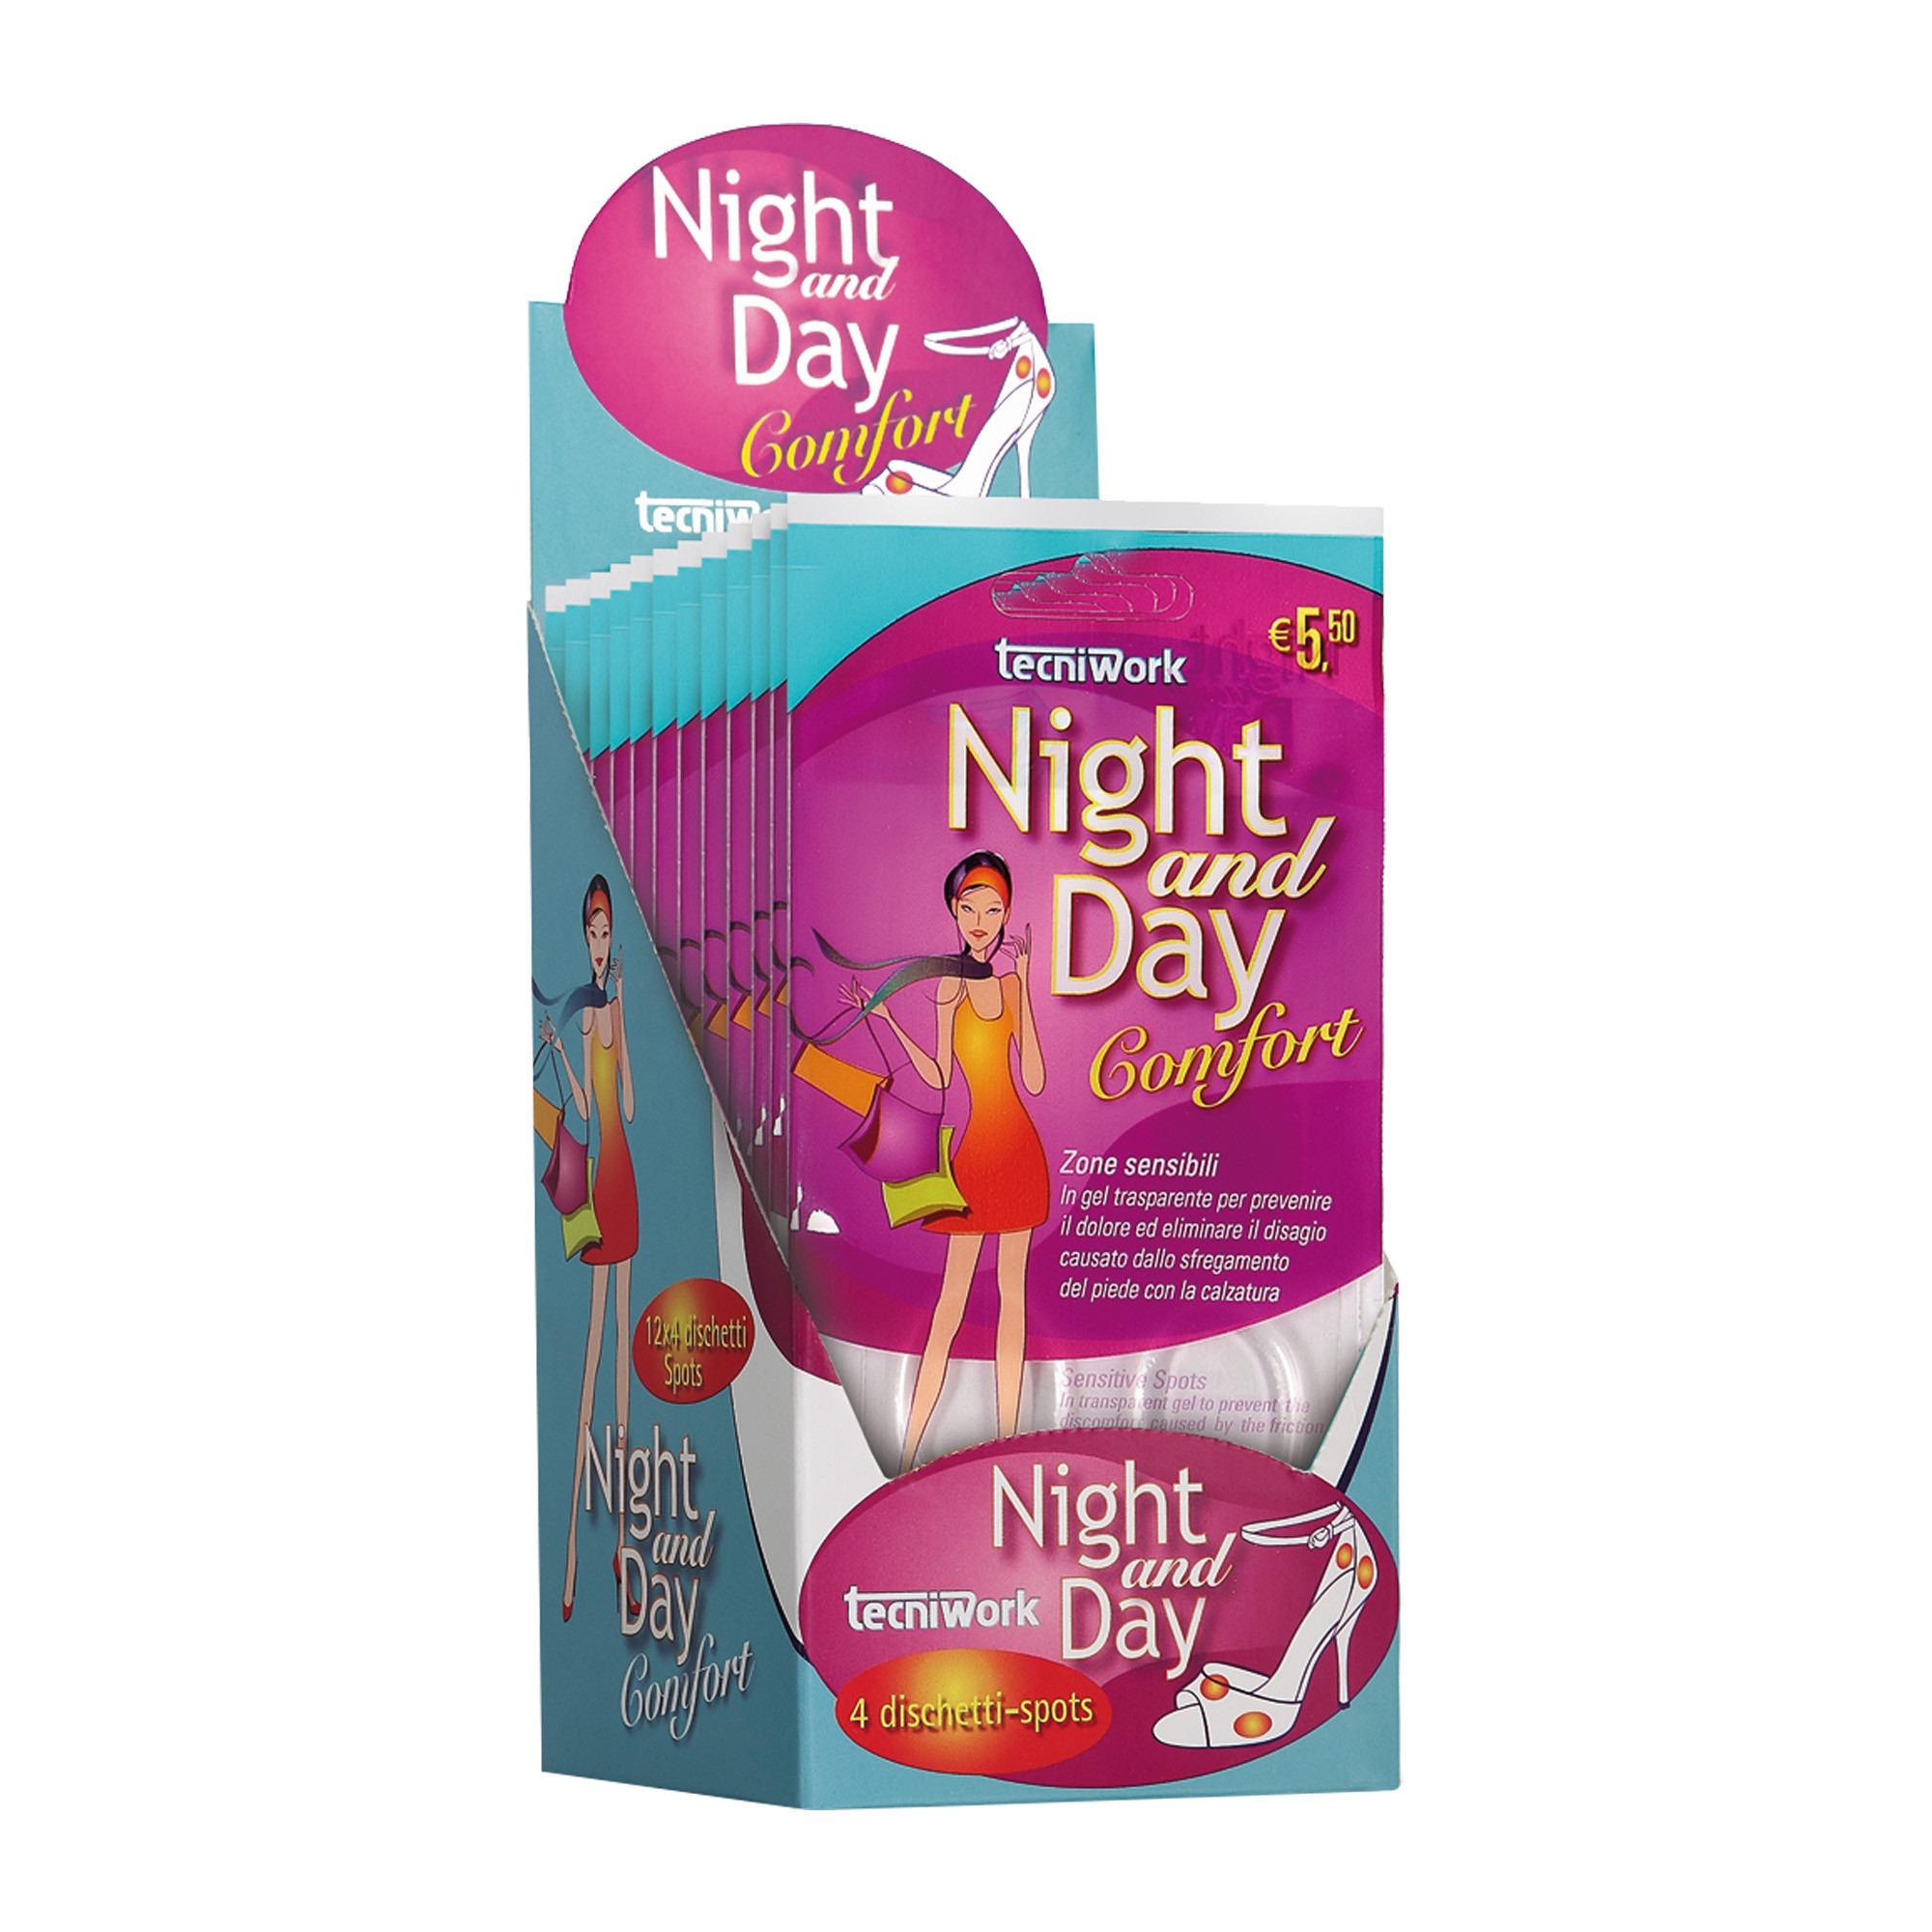 Night and Day unauffällige Gel-Kissen für empfindliche Fußzonen Karton-Display à 12 Packungen